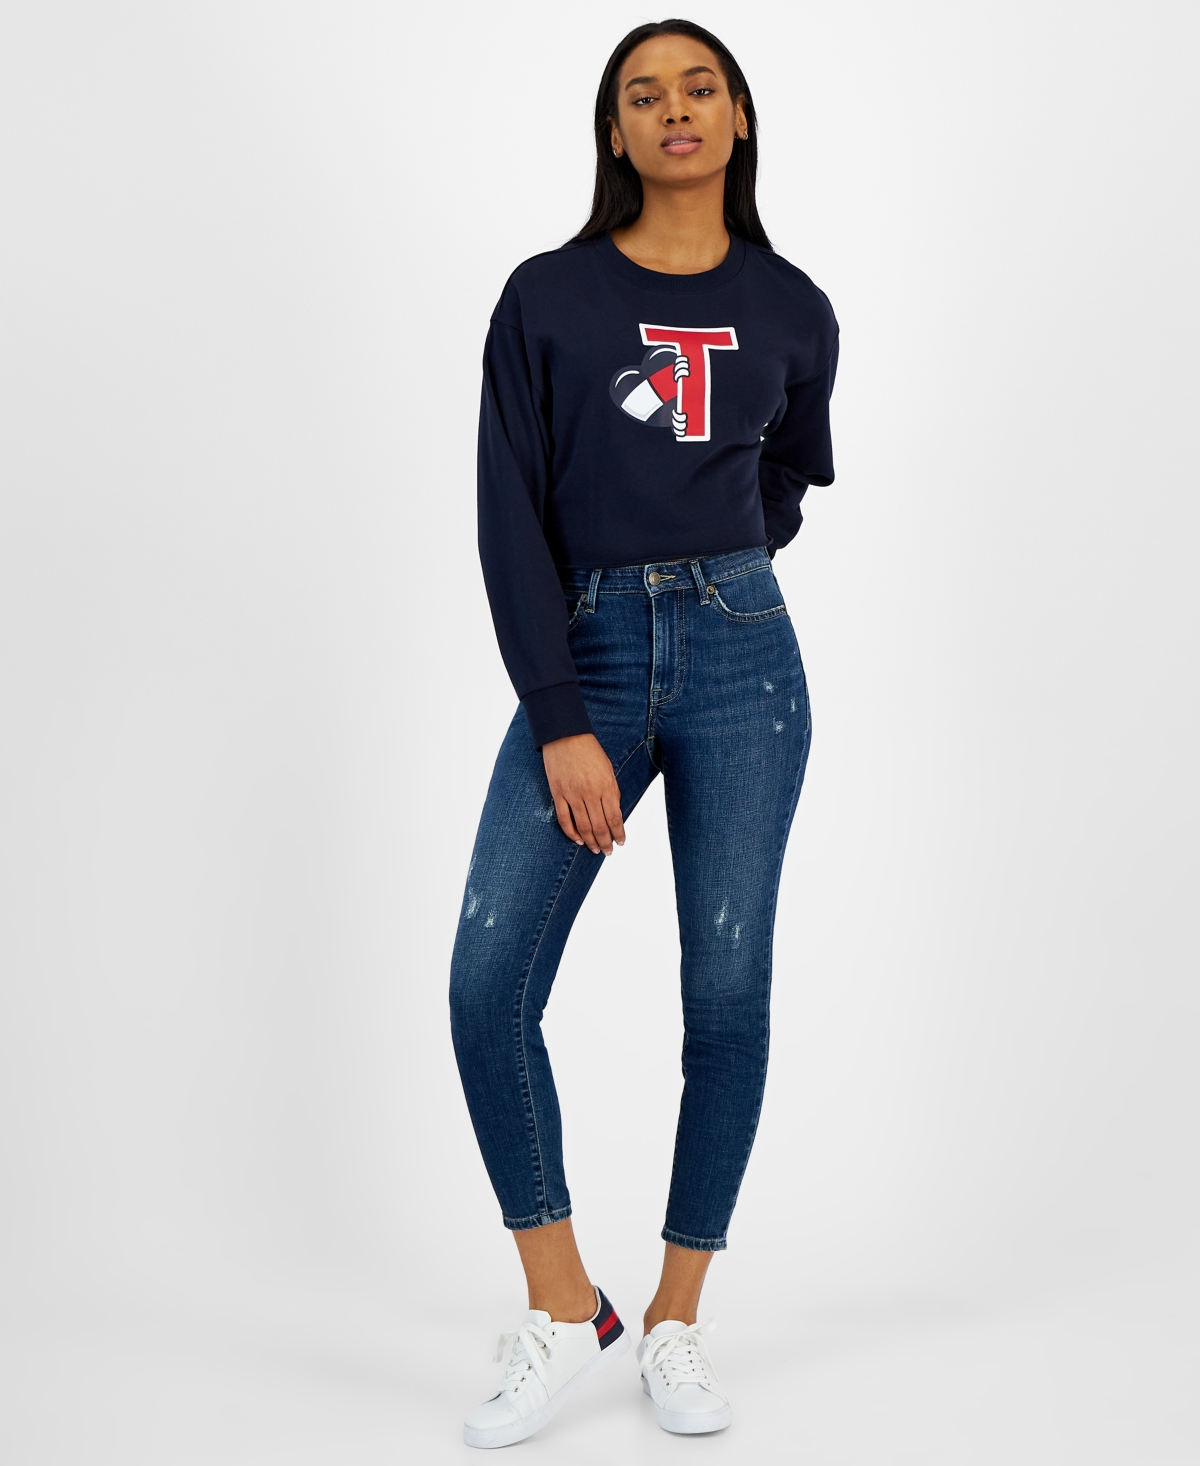  Tommy Jeans Women's Peeking Heart French Terry Cropped Sweatshirt